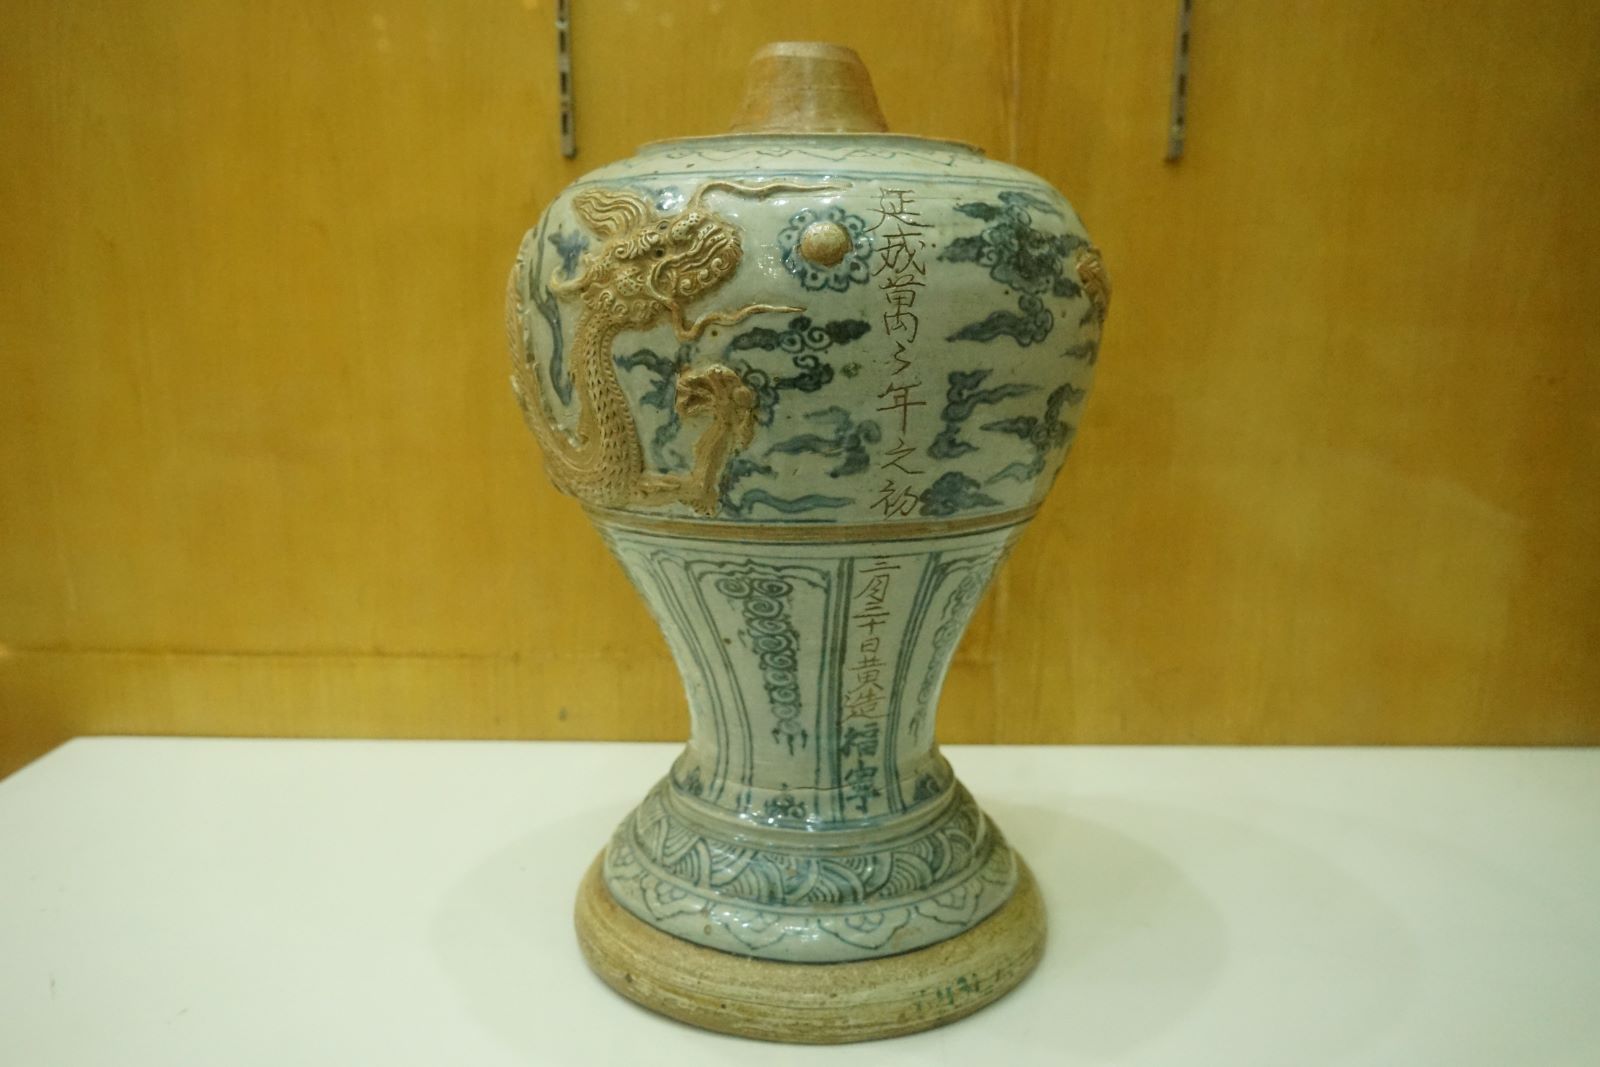 Chân đèn (làm bằng gốm hoa lam) trang trí hình rồng, cổ vật được tạo ngày 30 tháng 3, niên hiệu Diên Thánh I (năm 1578). Ảnh: Quách Du